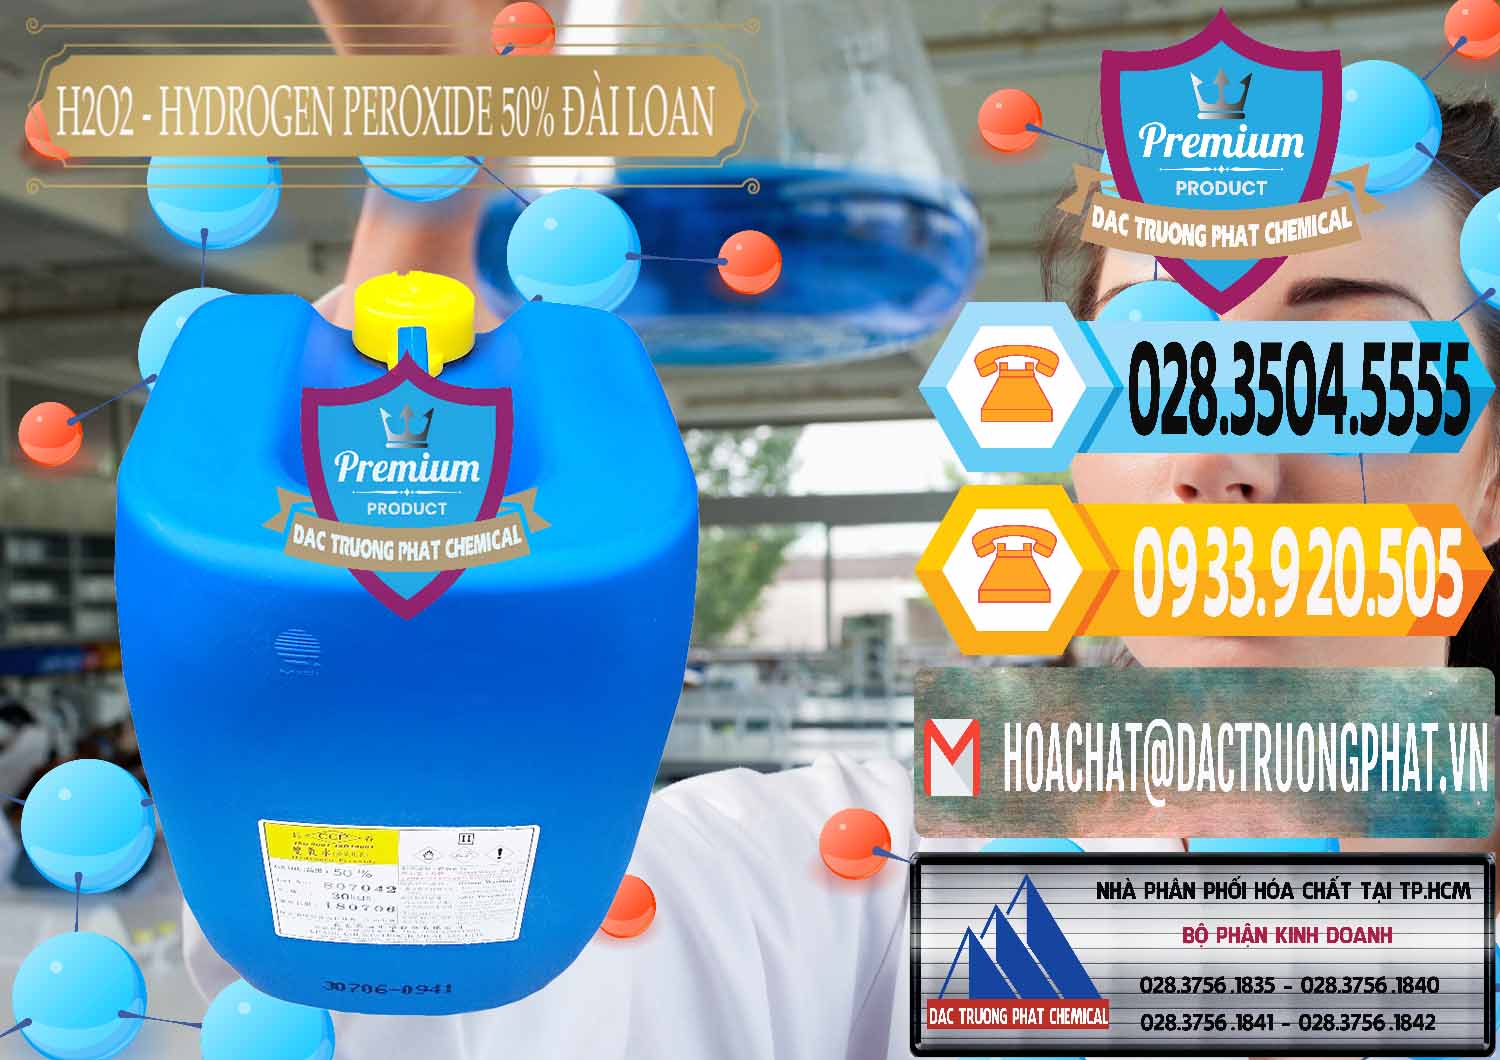 Cty cung cấp và bán H2O2 - Hydrogen Peroxide 50% Đài Loan Taiwan Chang Chun - 0069 - Đơn vị phân phối - cung cấp hóa chất tại TP.HCM - hoachattayrua.net